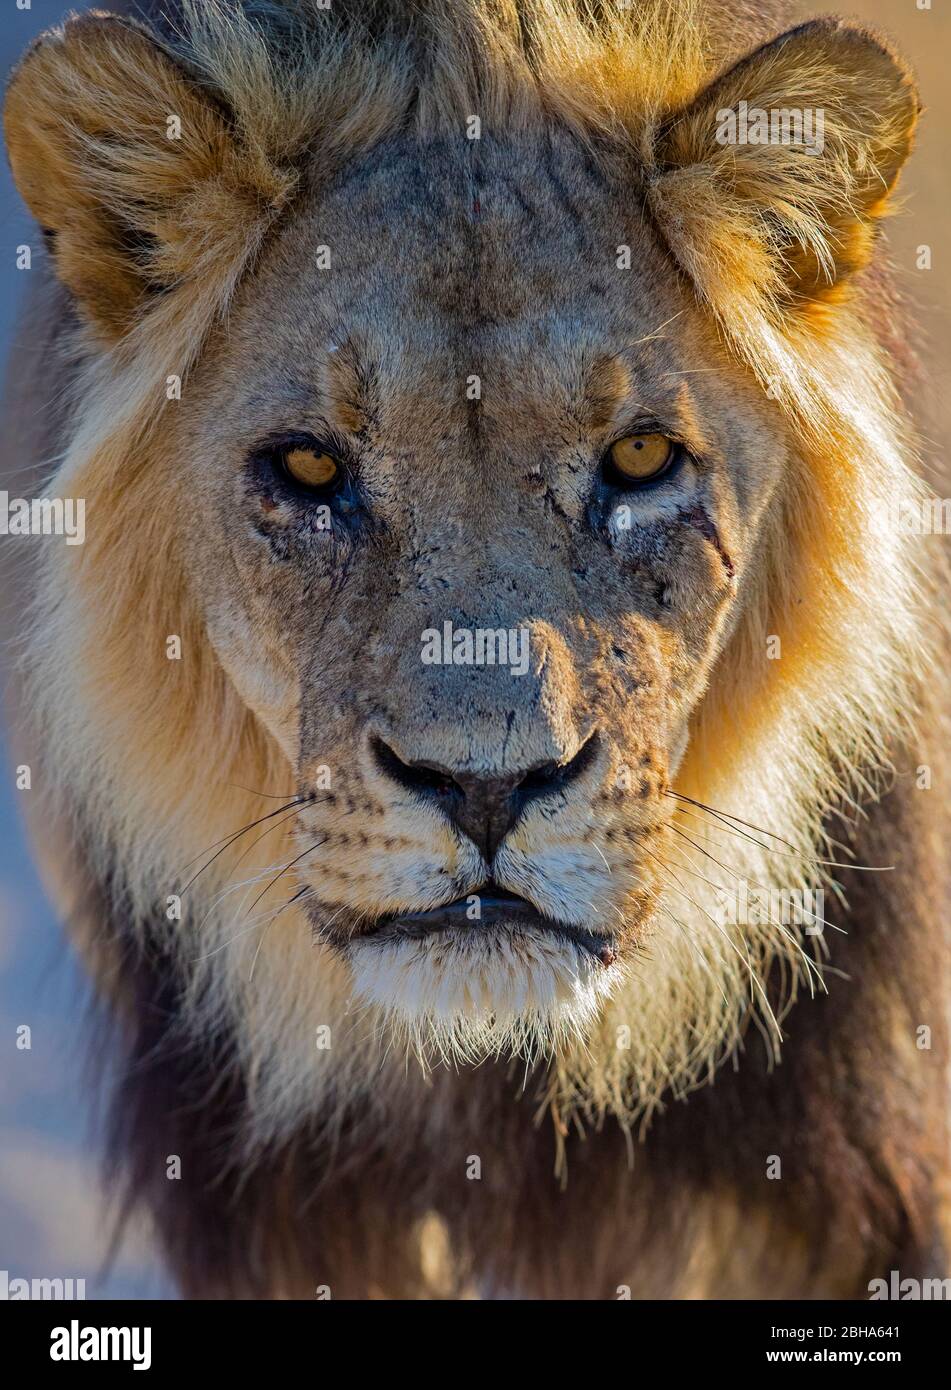 Lion regardant l'appareil photo, Kgalagadi TransFrontier Park, Namibie Banque D'Images